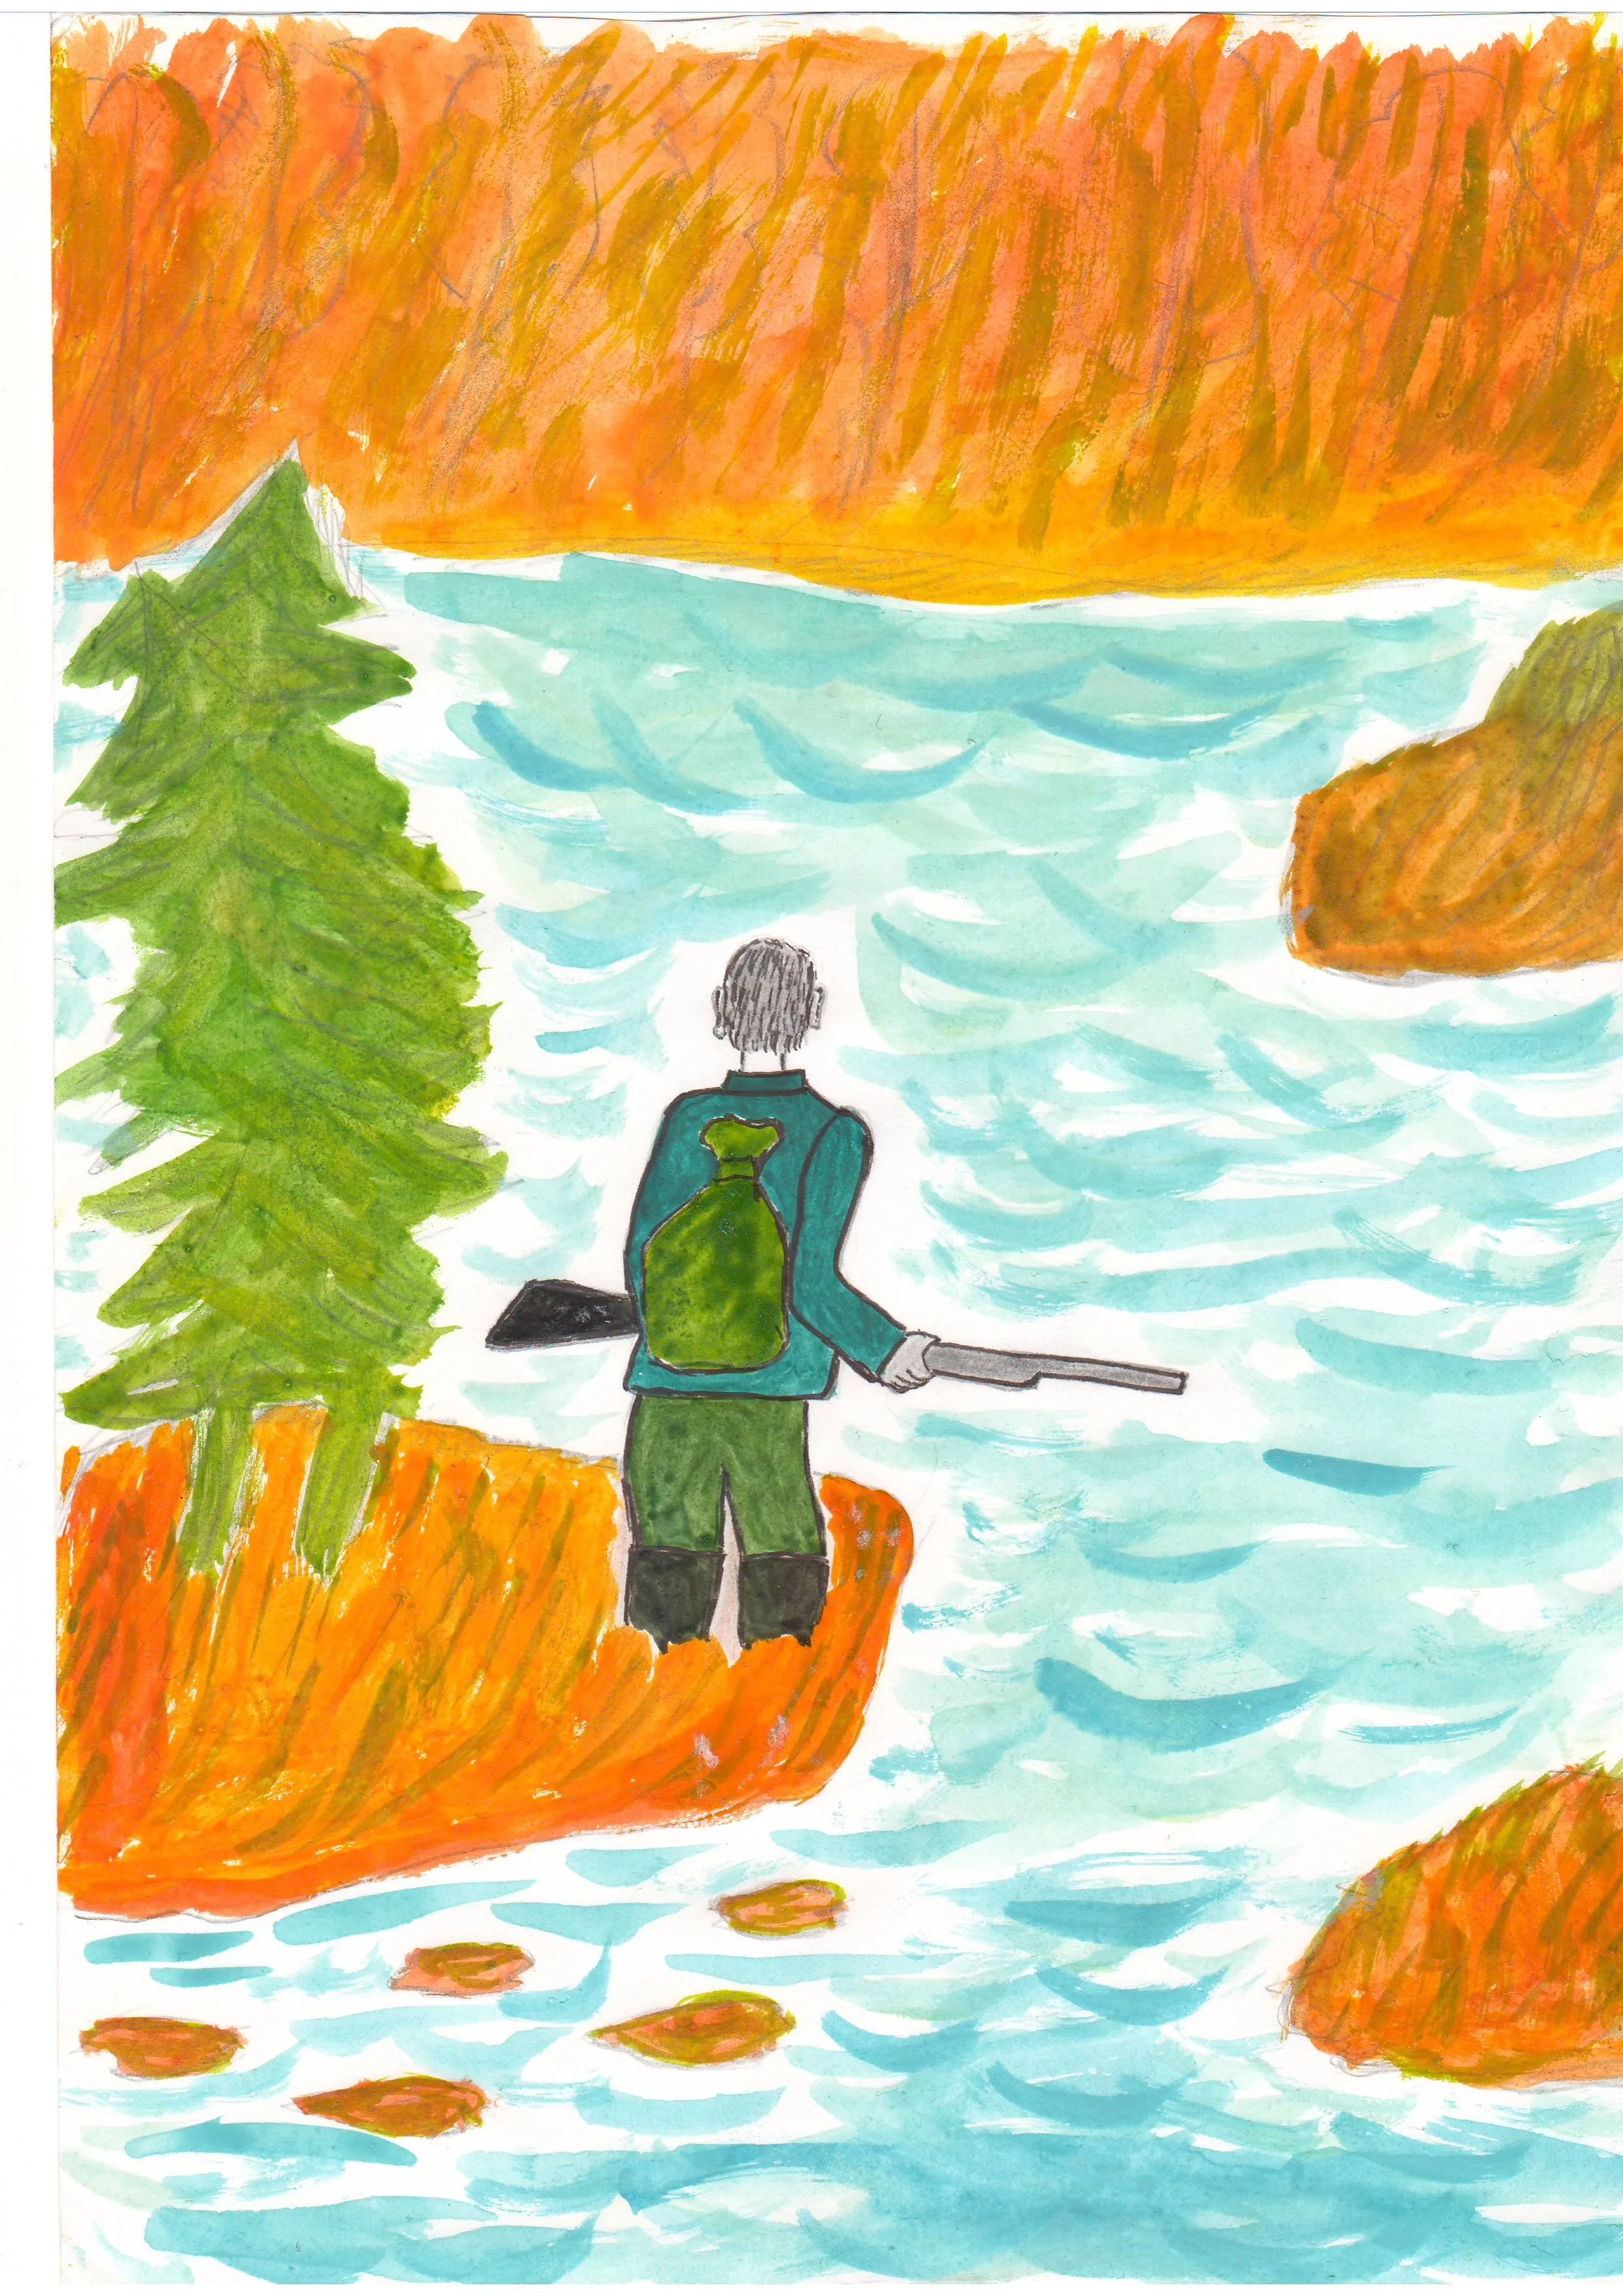 Иллюстрация васюткино озеро 5 класс рисунок. Астафьев 5 класс Васюткино озеро. Астафьев Васюткино озеро иллюстрации.